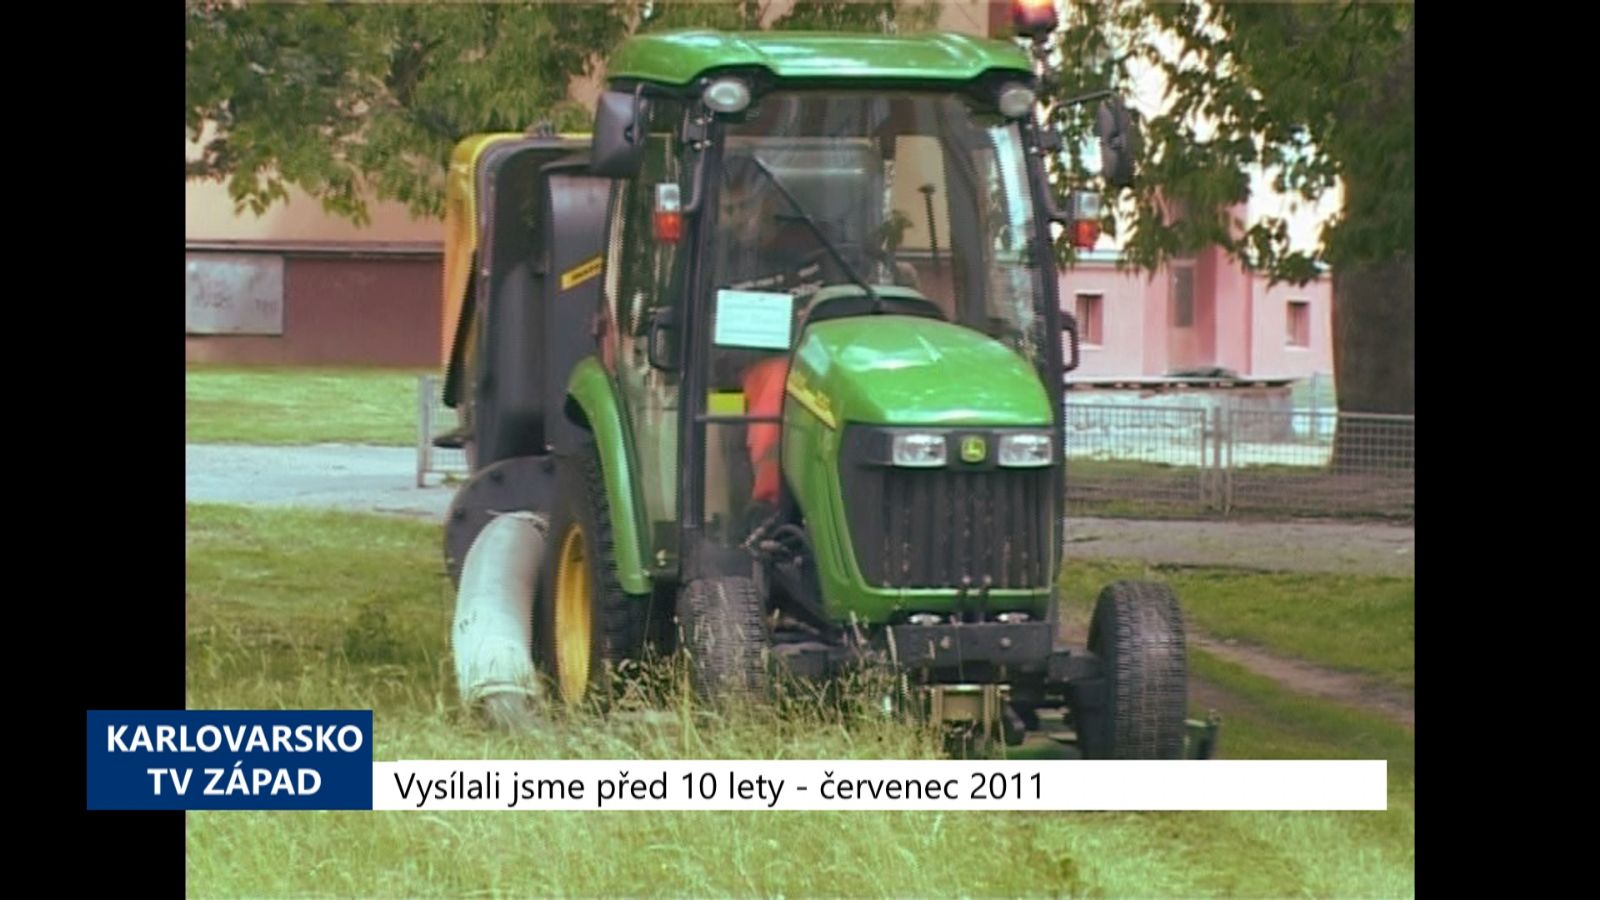 2011 – Cheb: CHETES bude kompostovat posekanou zeleň (4410) (TV Západ)